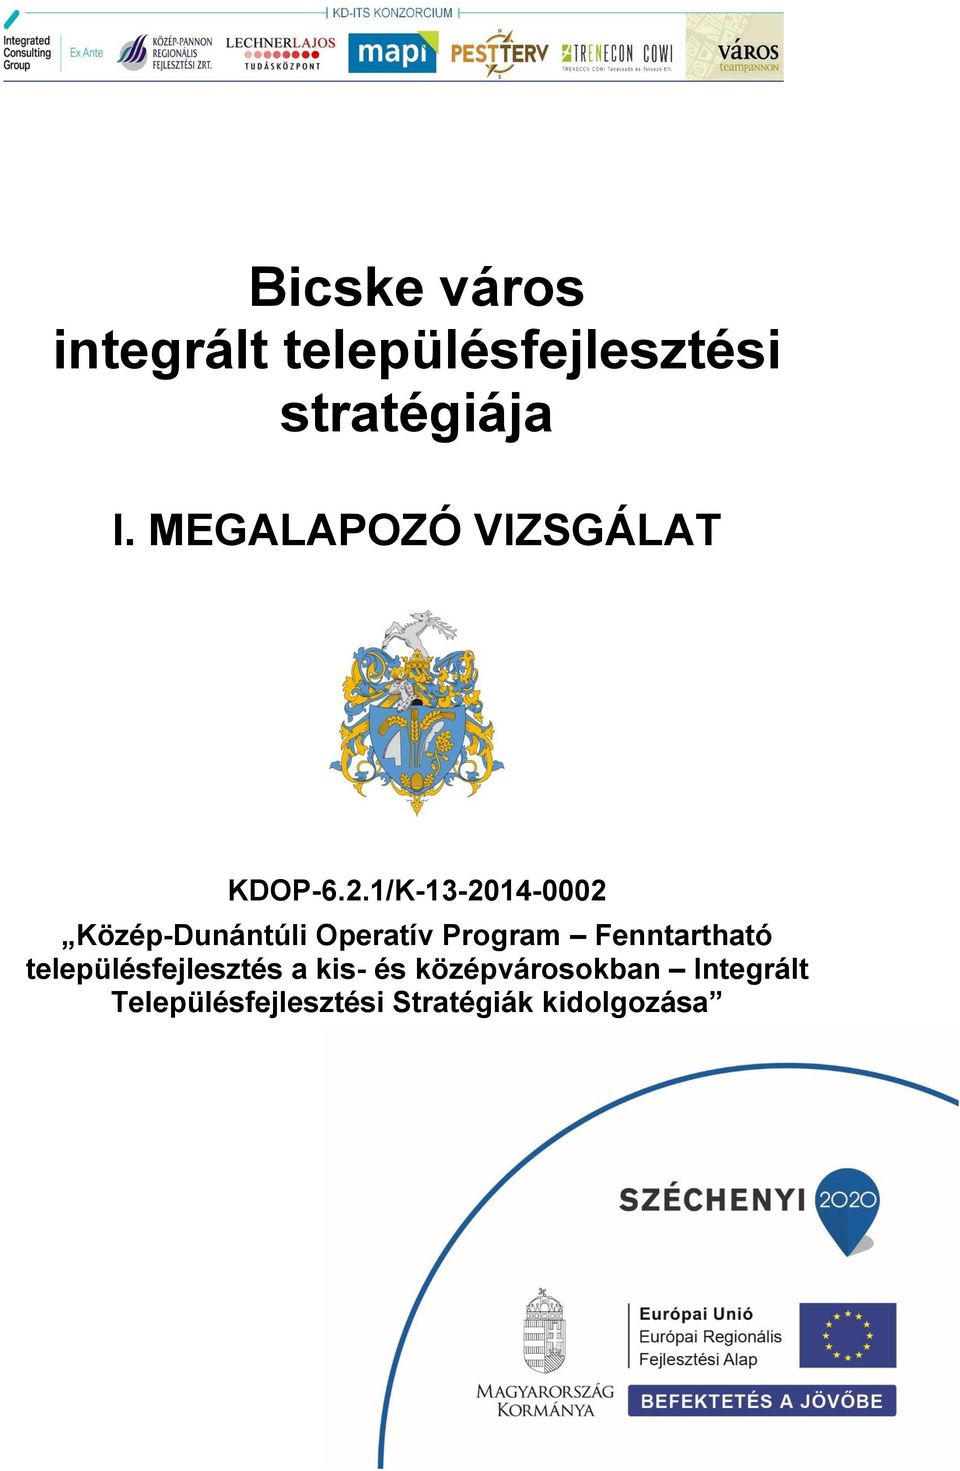 1/K-13-2014-0002 Közép-Dunántúli Operatív Program Fenntartható